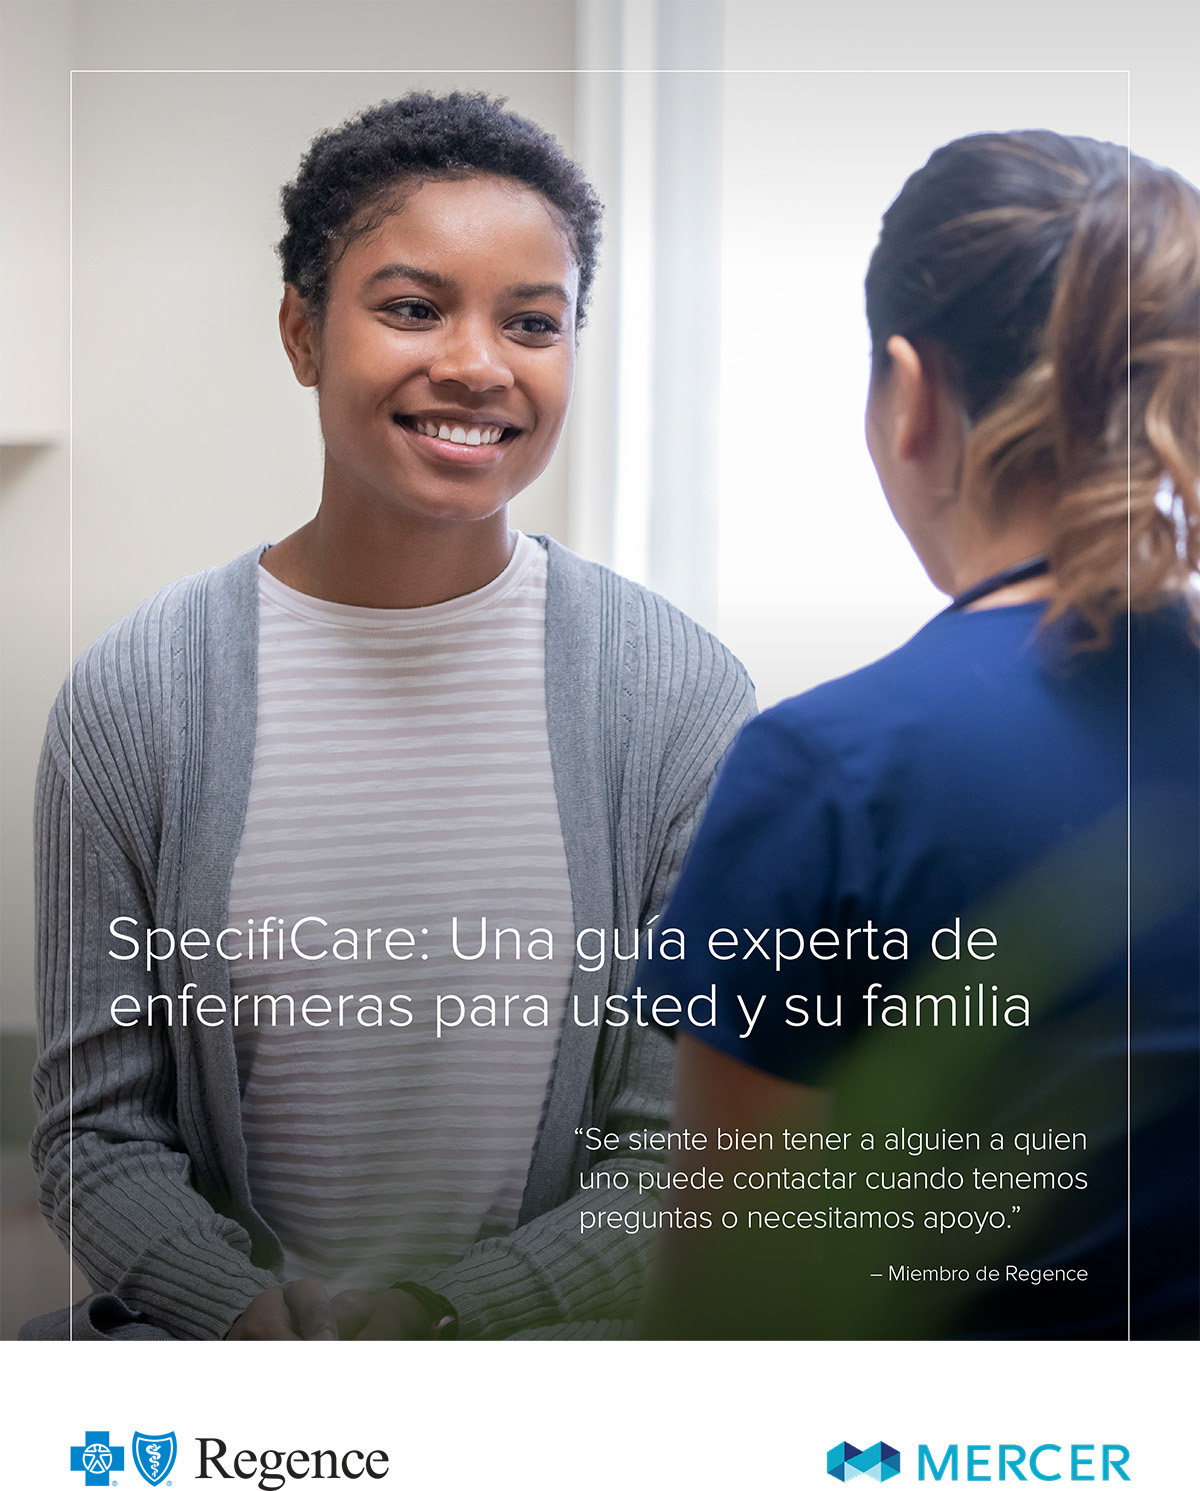 SpecifiCare: Una guía experta de enfermeras para usted y su familia